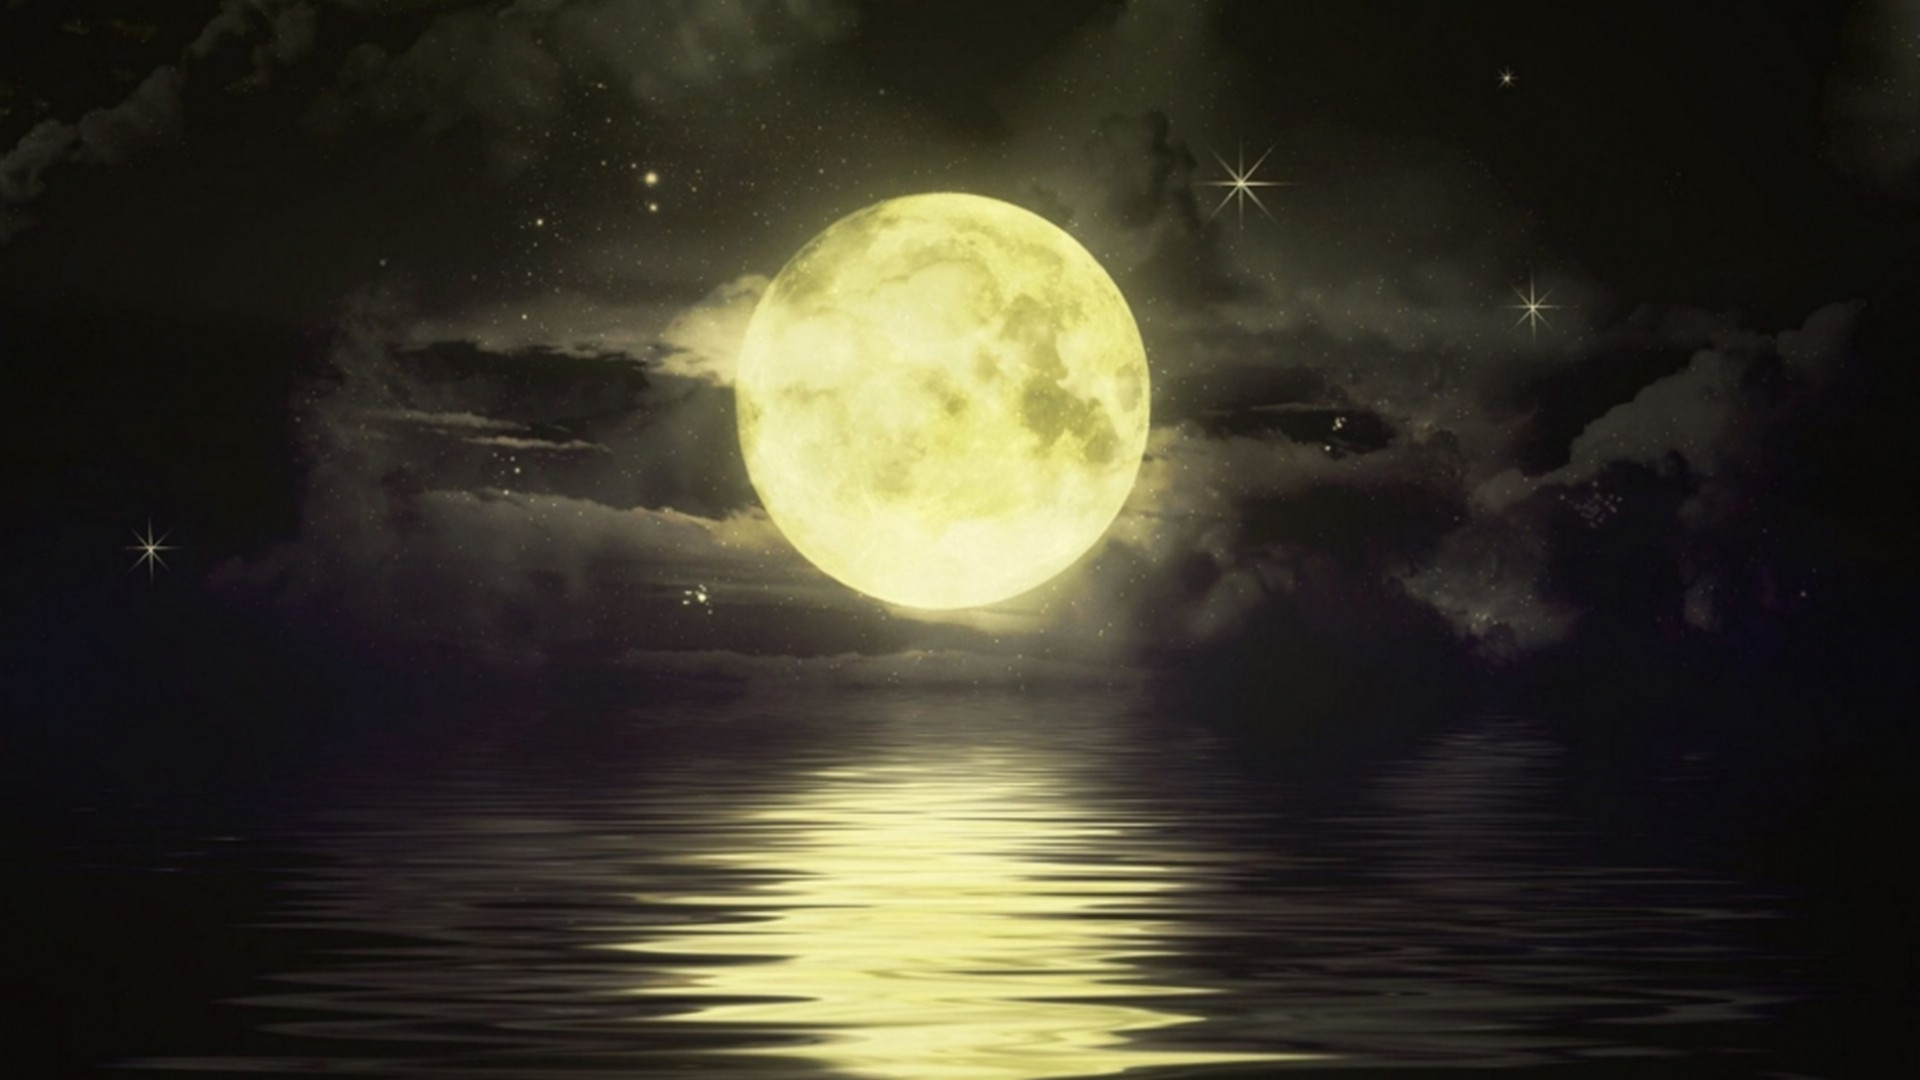 浪漫月亮图片大全 月亮照片大全唯美